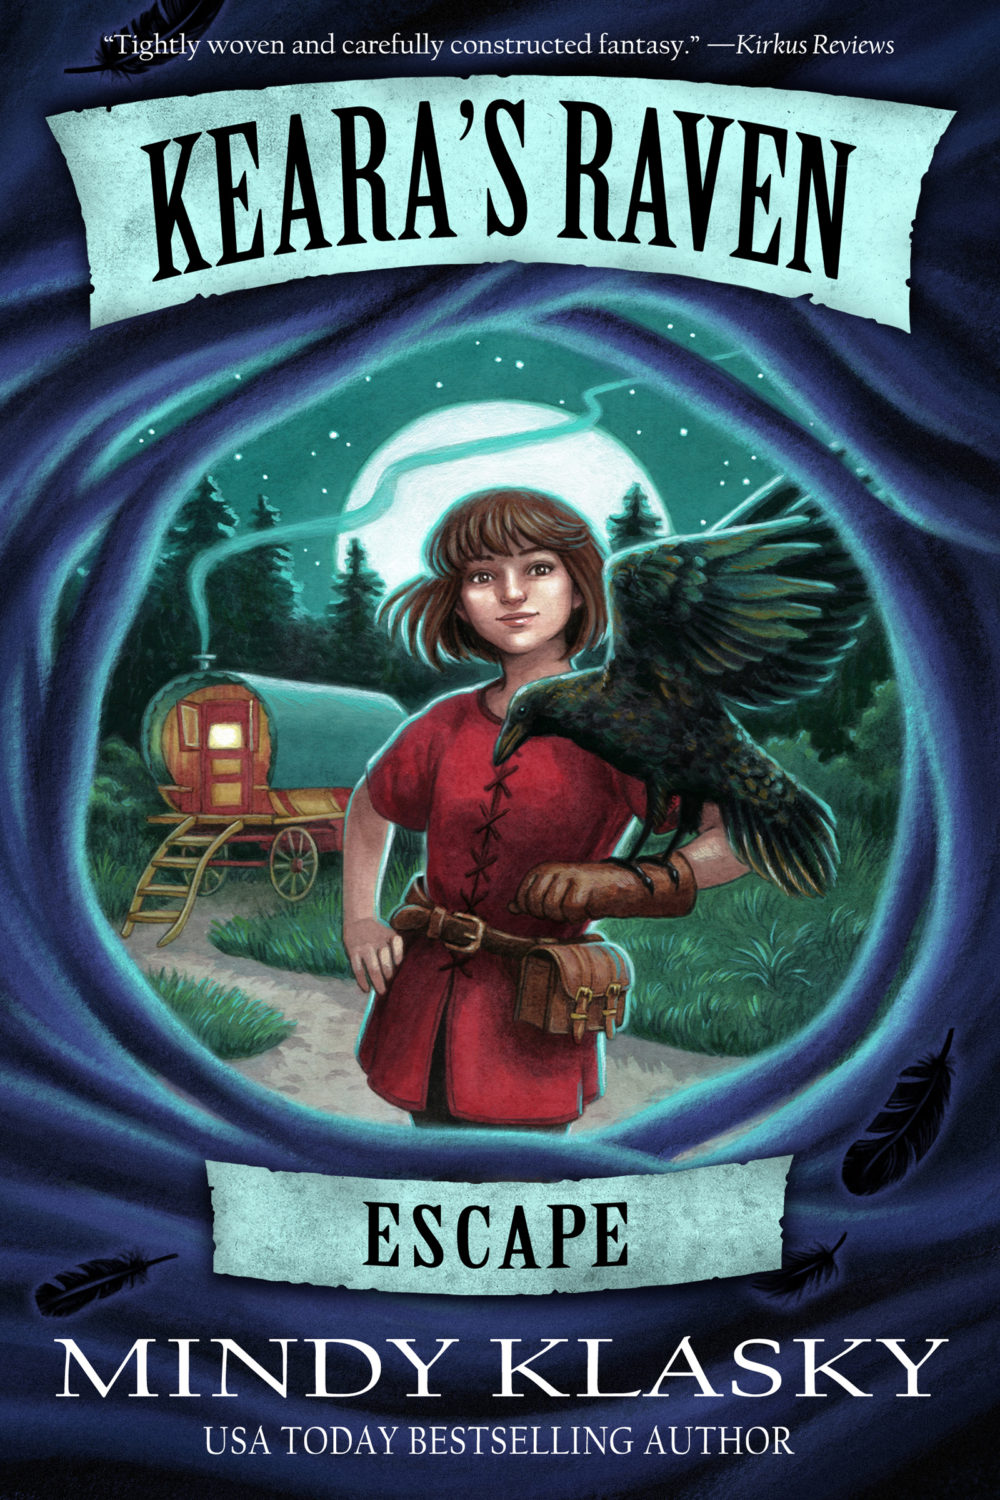 Keara's Raven: Escape by Mindy Klasky